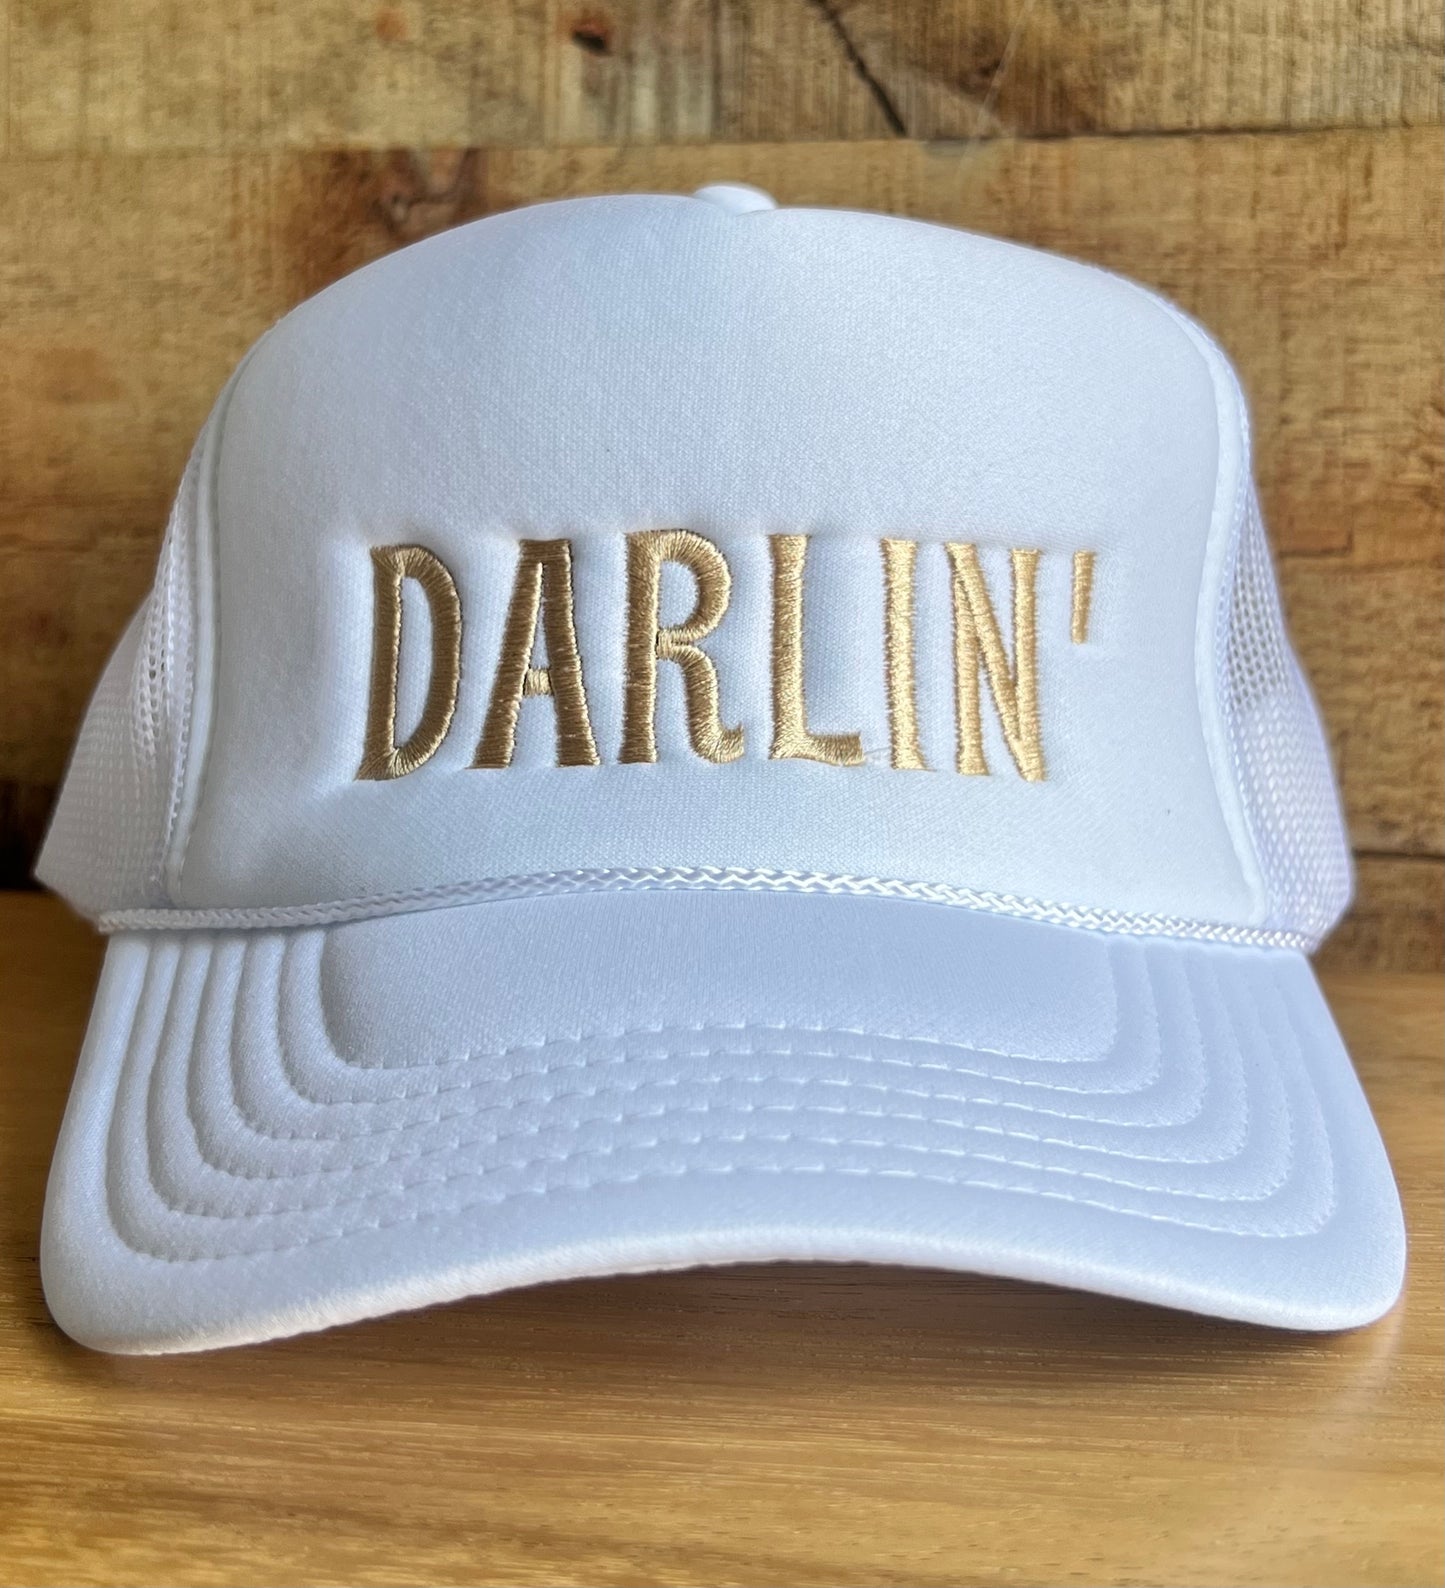 Darlin’ - White